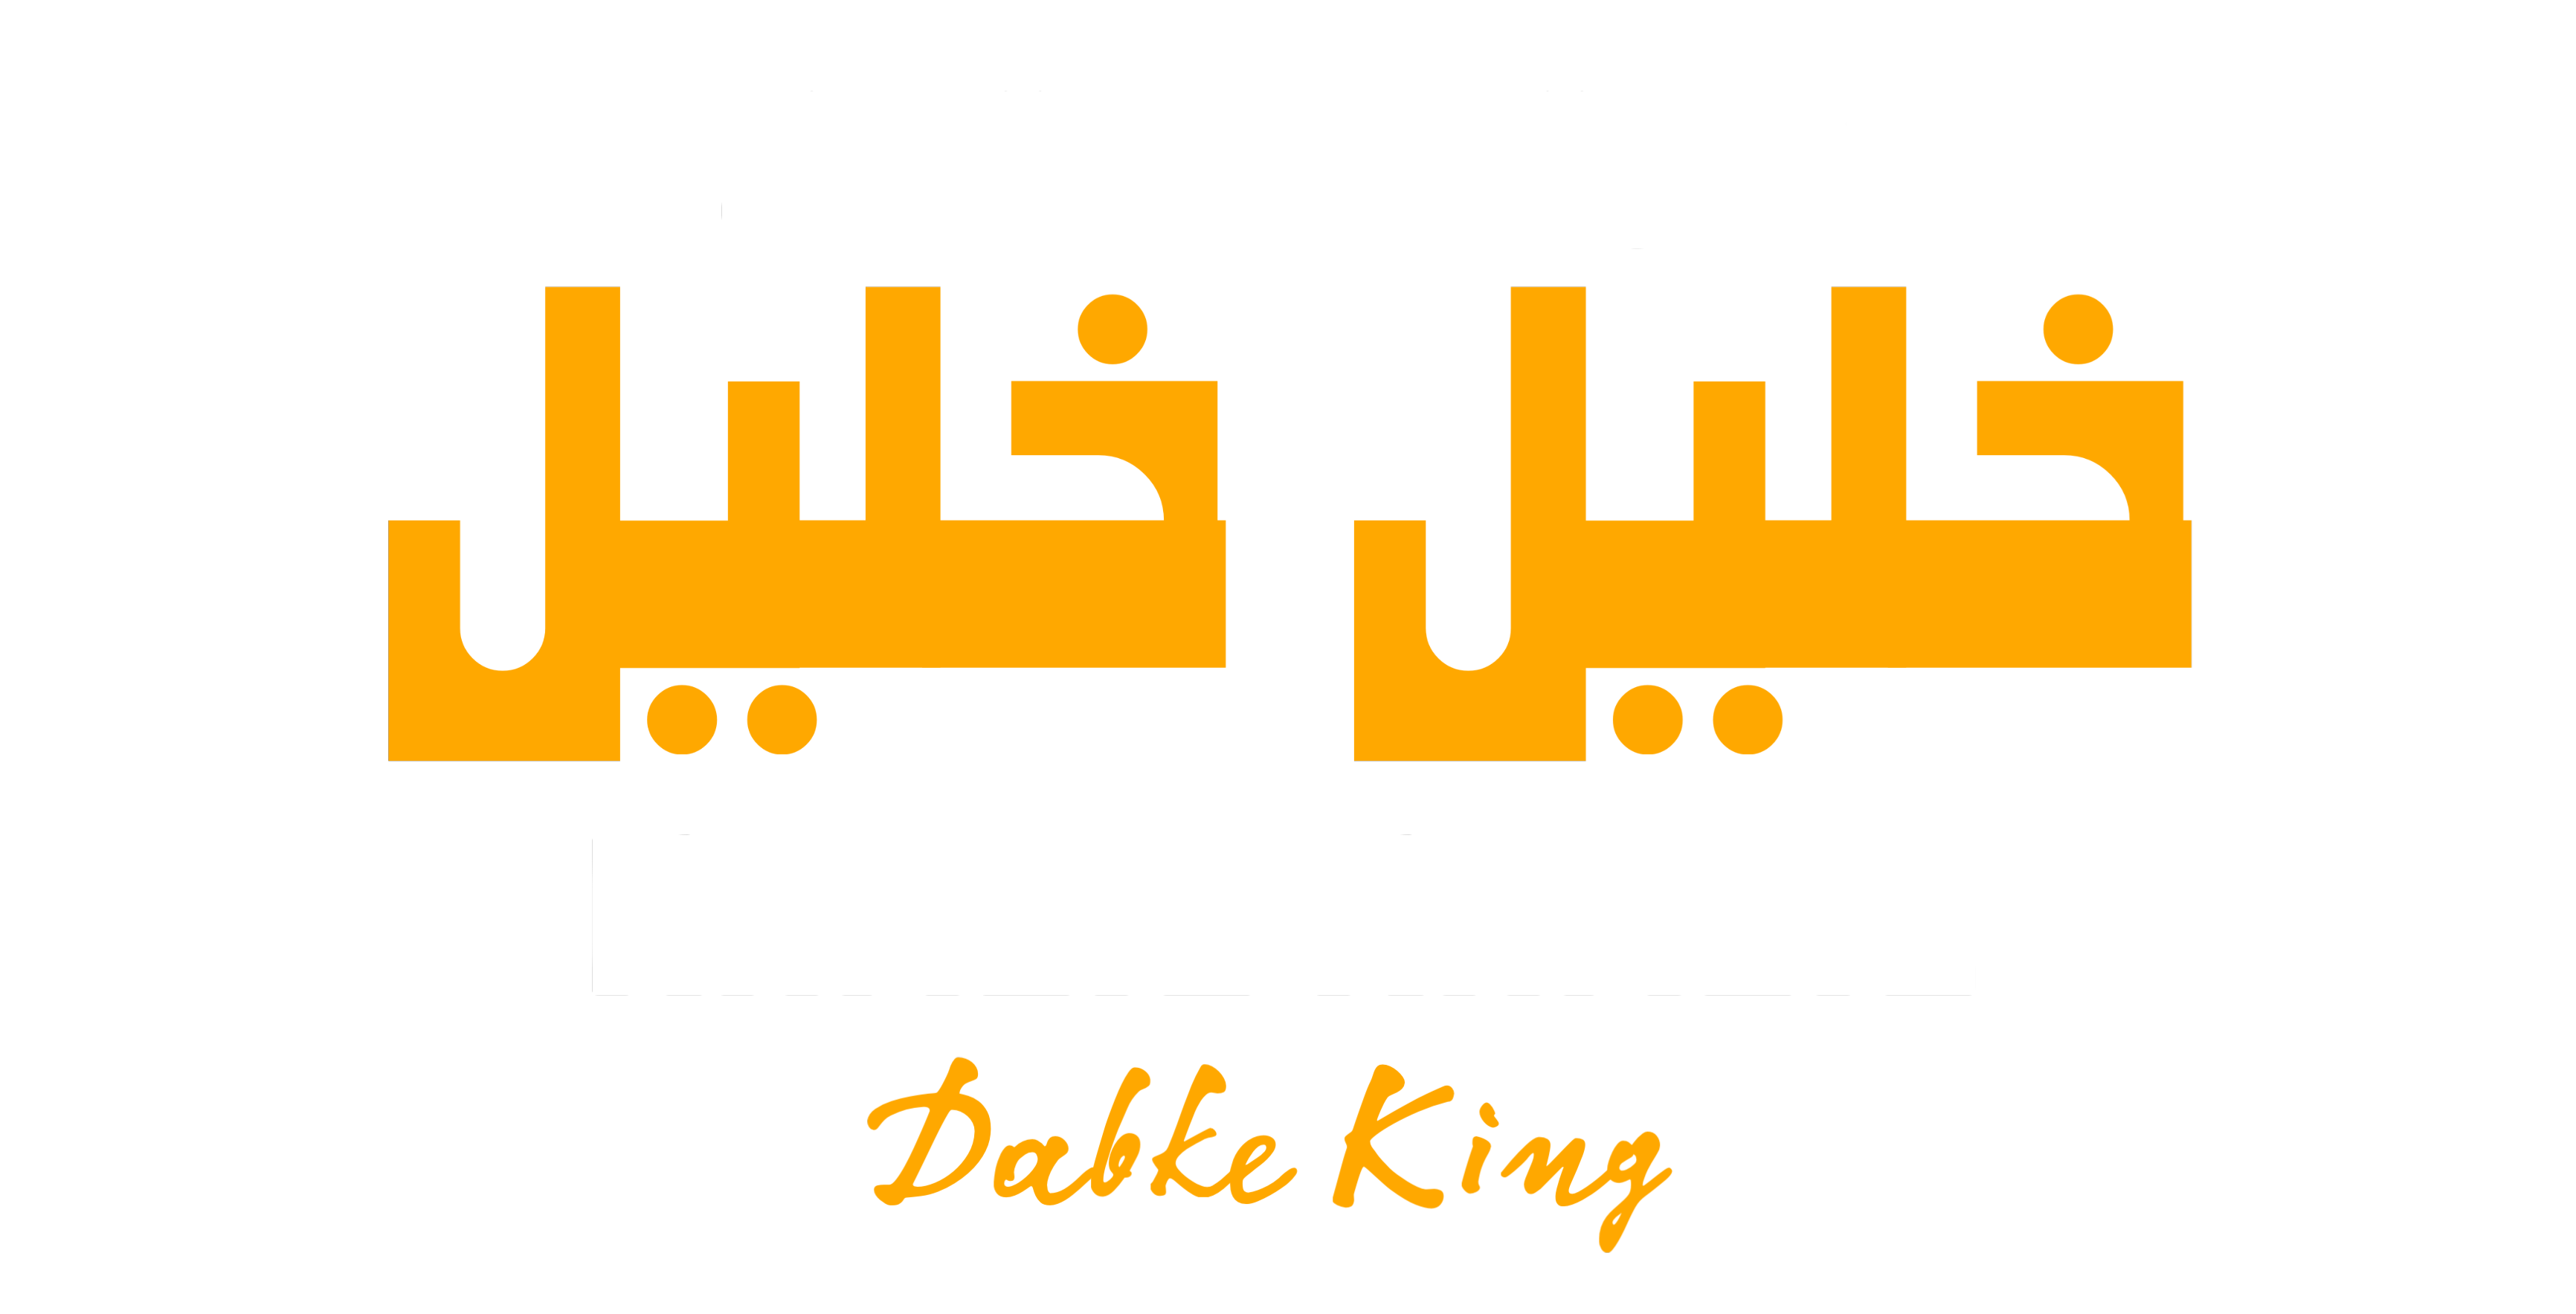 KHALIL KHALIL